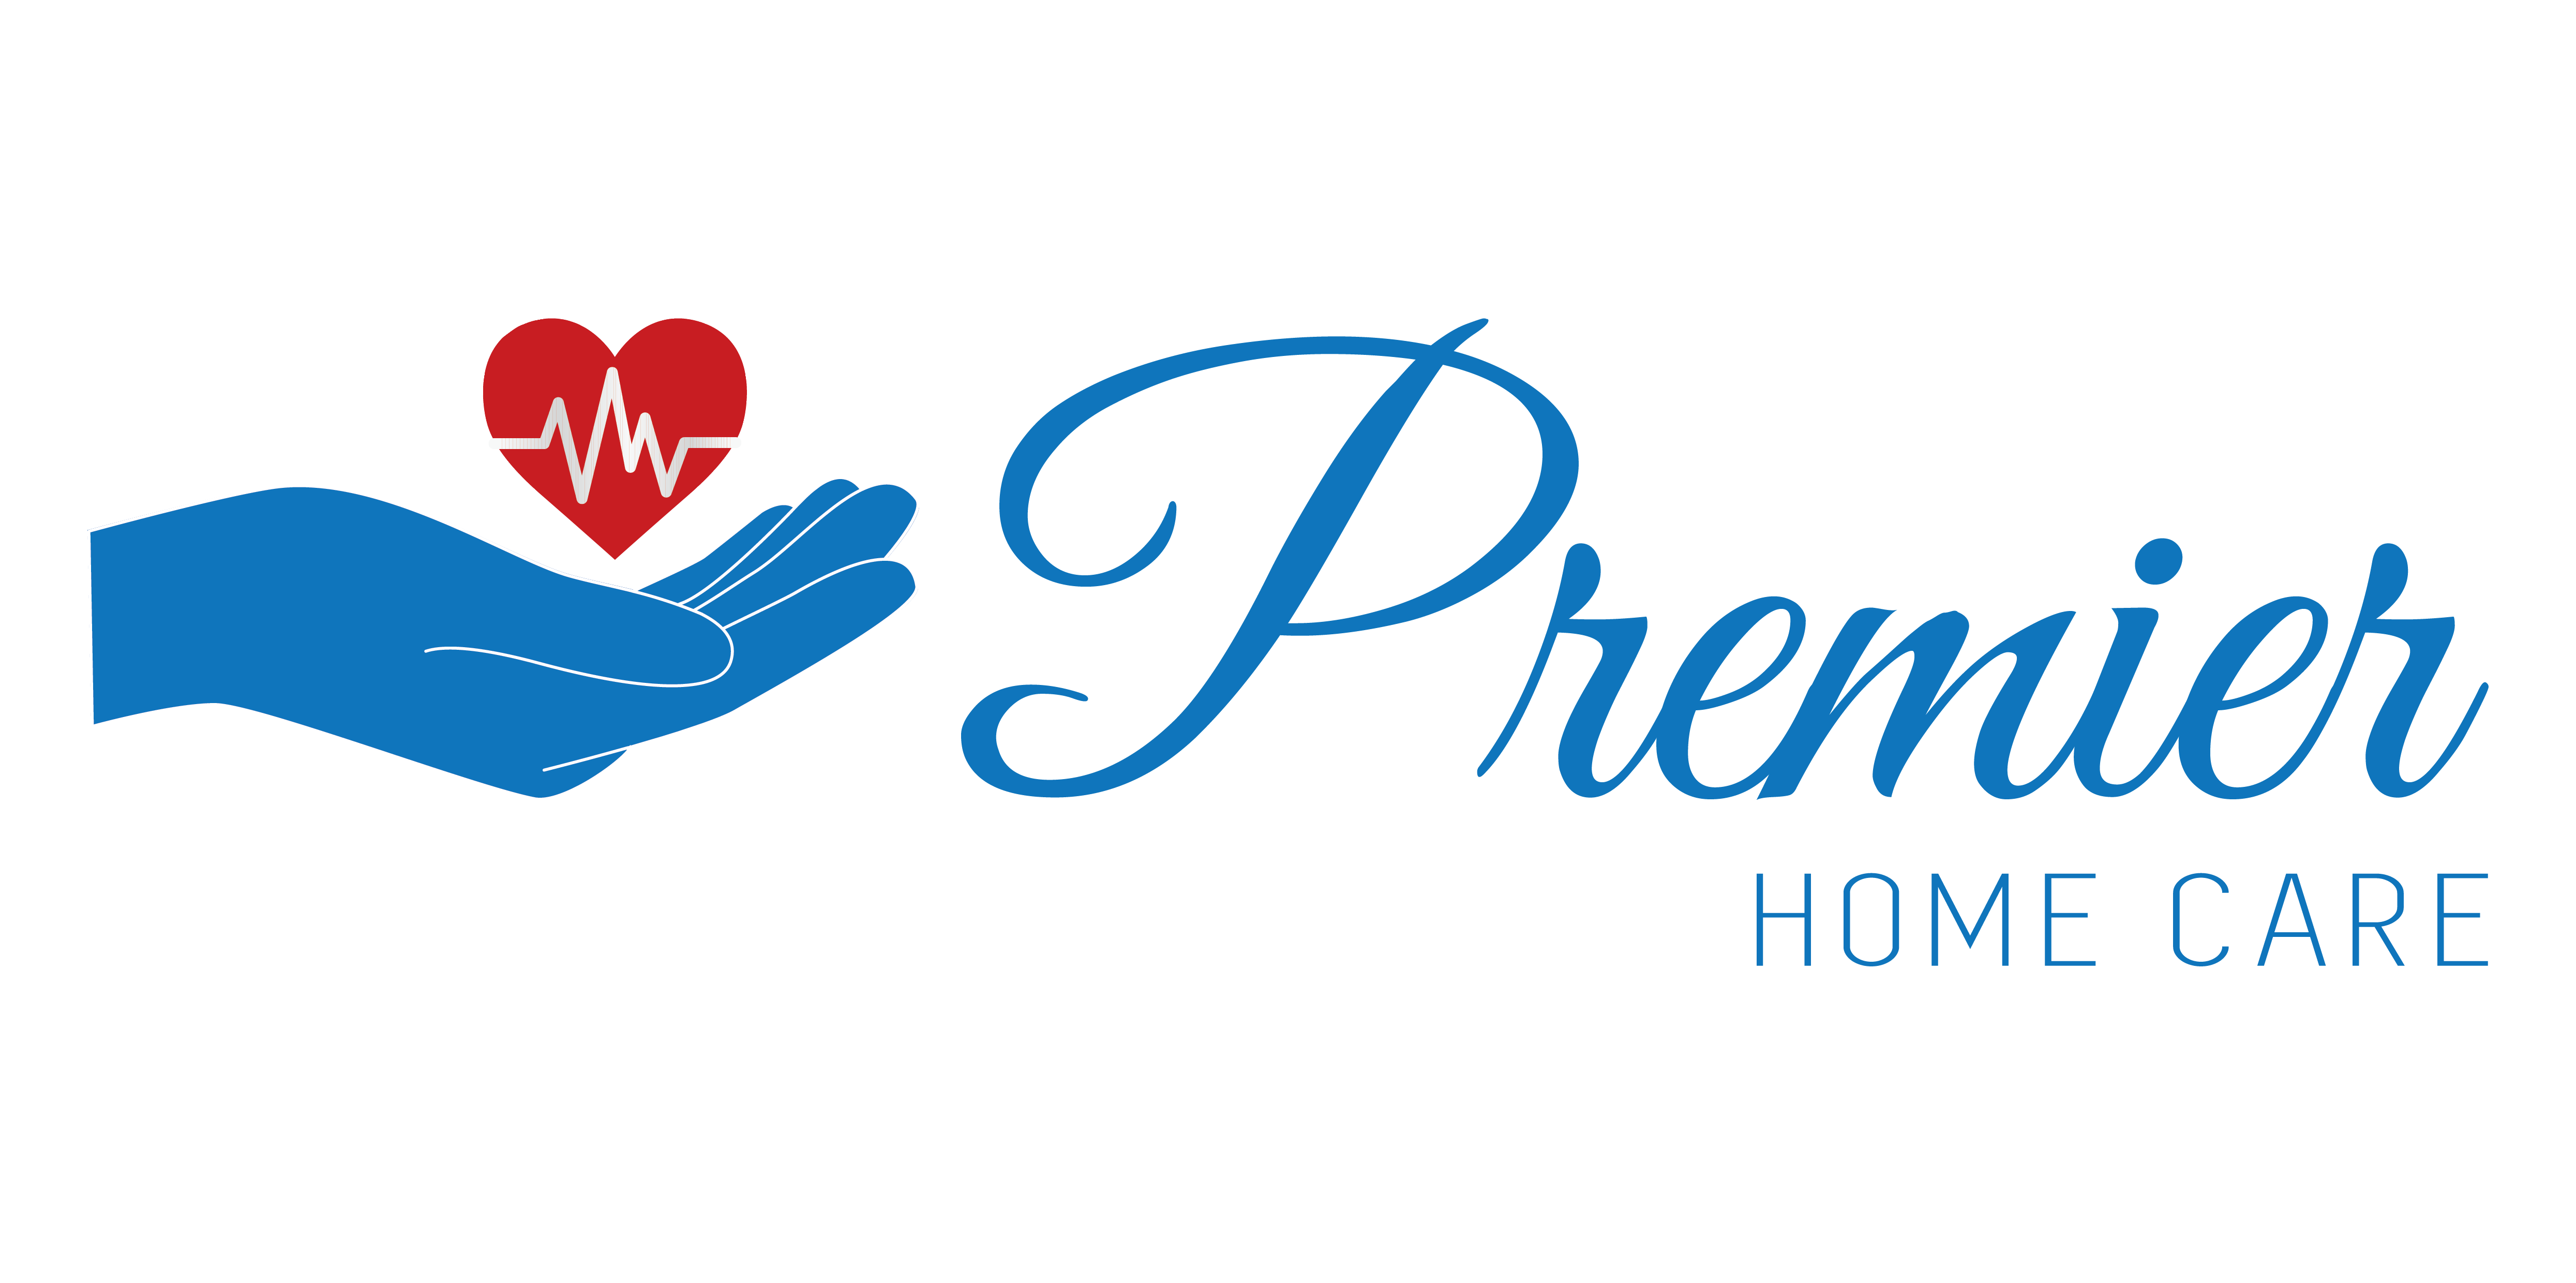 Premier Home Care